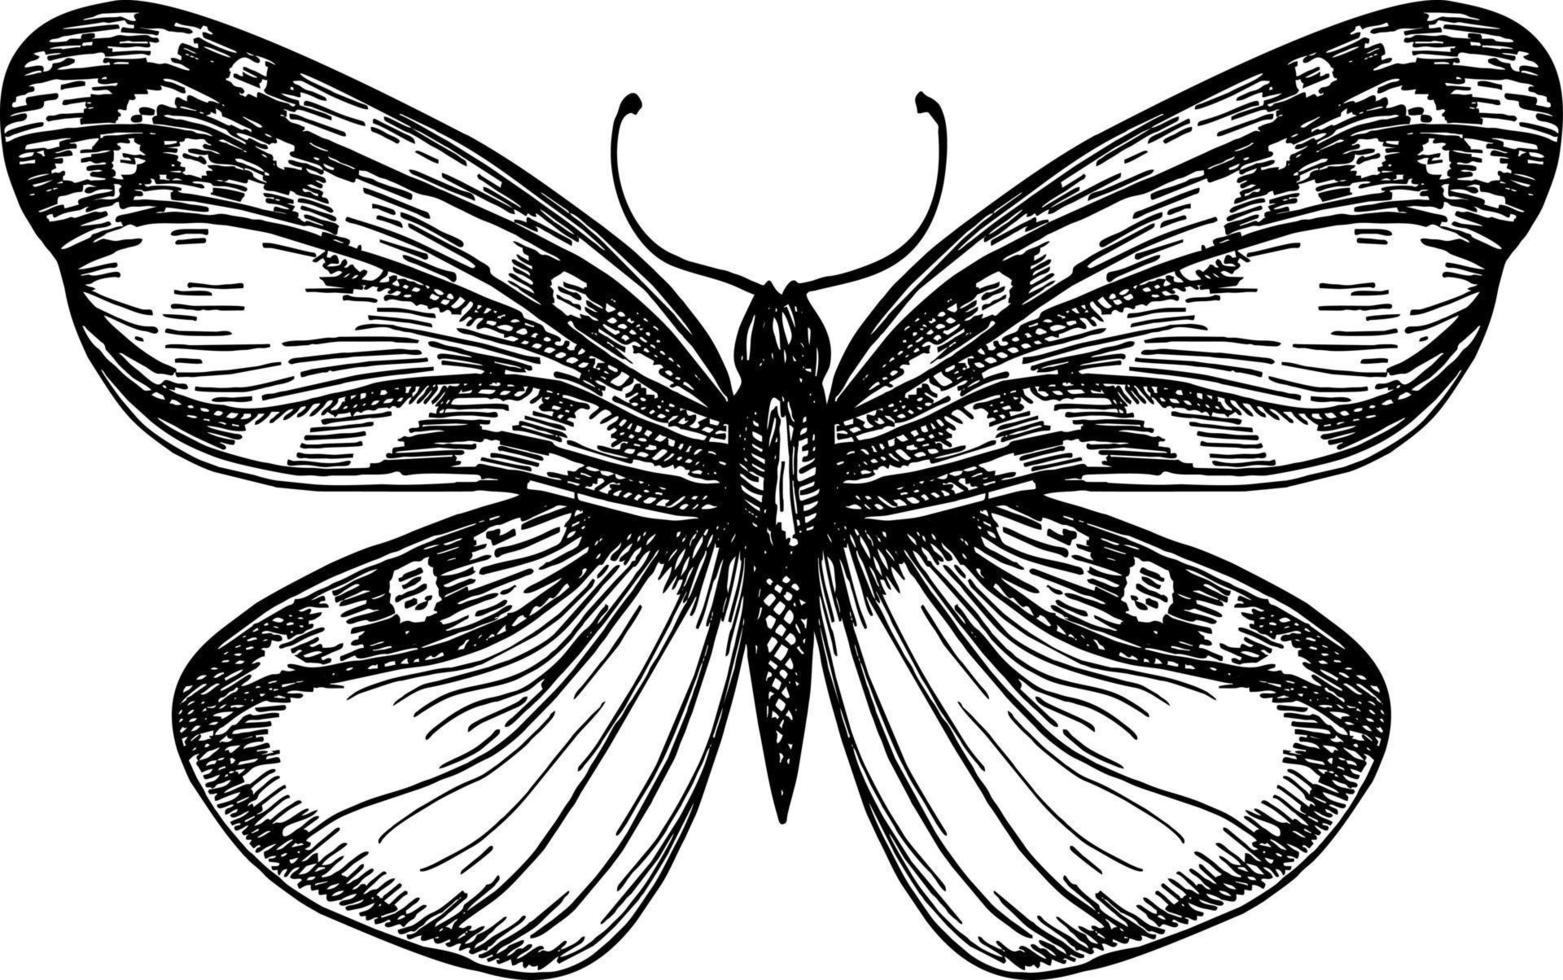 papillon avec vue de dessus des ailes ouvertes, l'esquisse graphique de dessin symétrique. logo dessiné à la main à l'encre noire linéaire à main levée dans un stylo de style art rétro gribouillis sur papier. gravure, encre, dessin au trait, vecteur